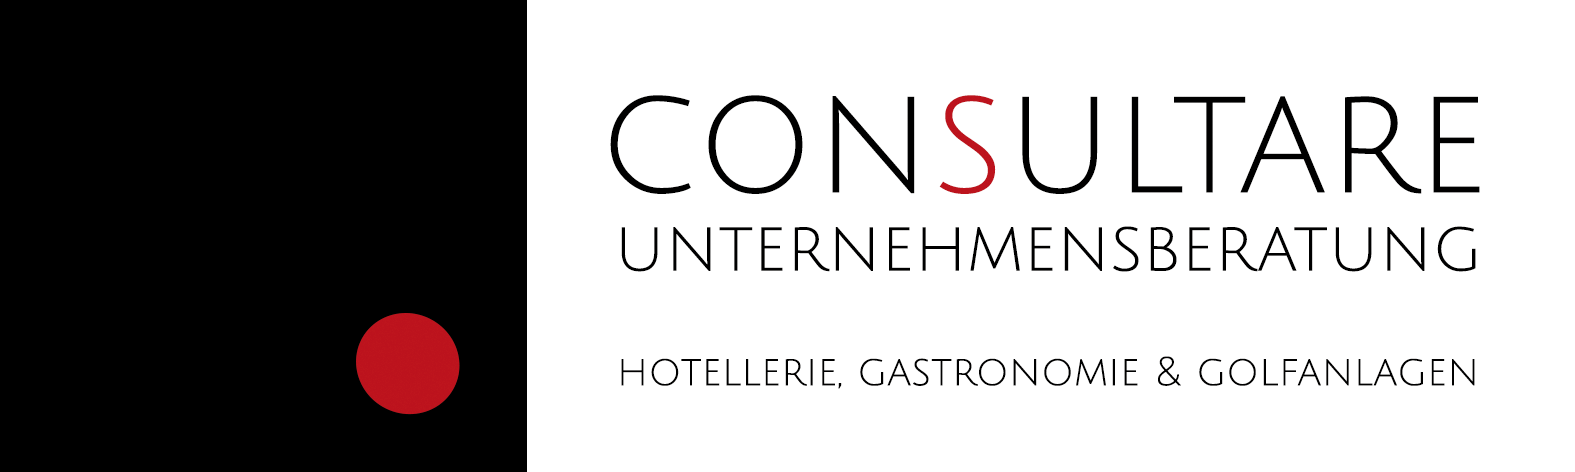 Unternehmensberatung für Hotel, Gastronomie und Golfanlagen - Christian Marchel Hotelberatung Hotelconsulting Stresstest Betriebsnachfolge consultare.at